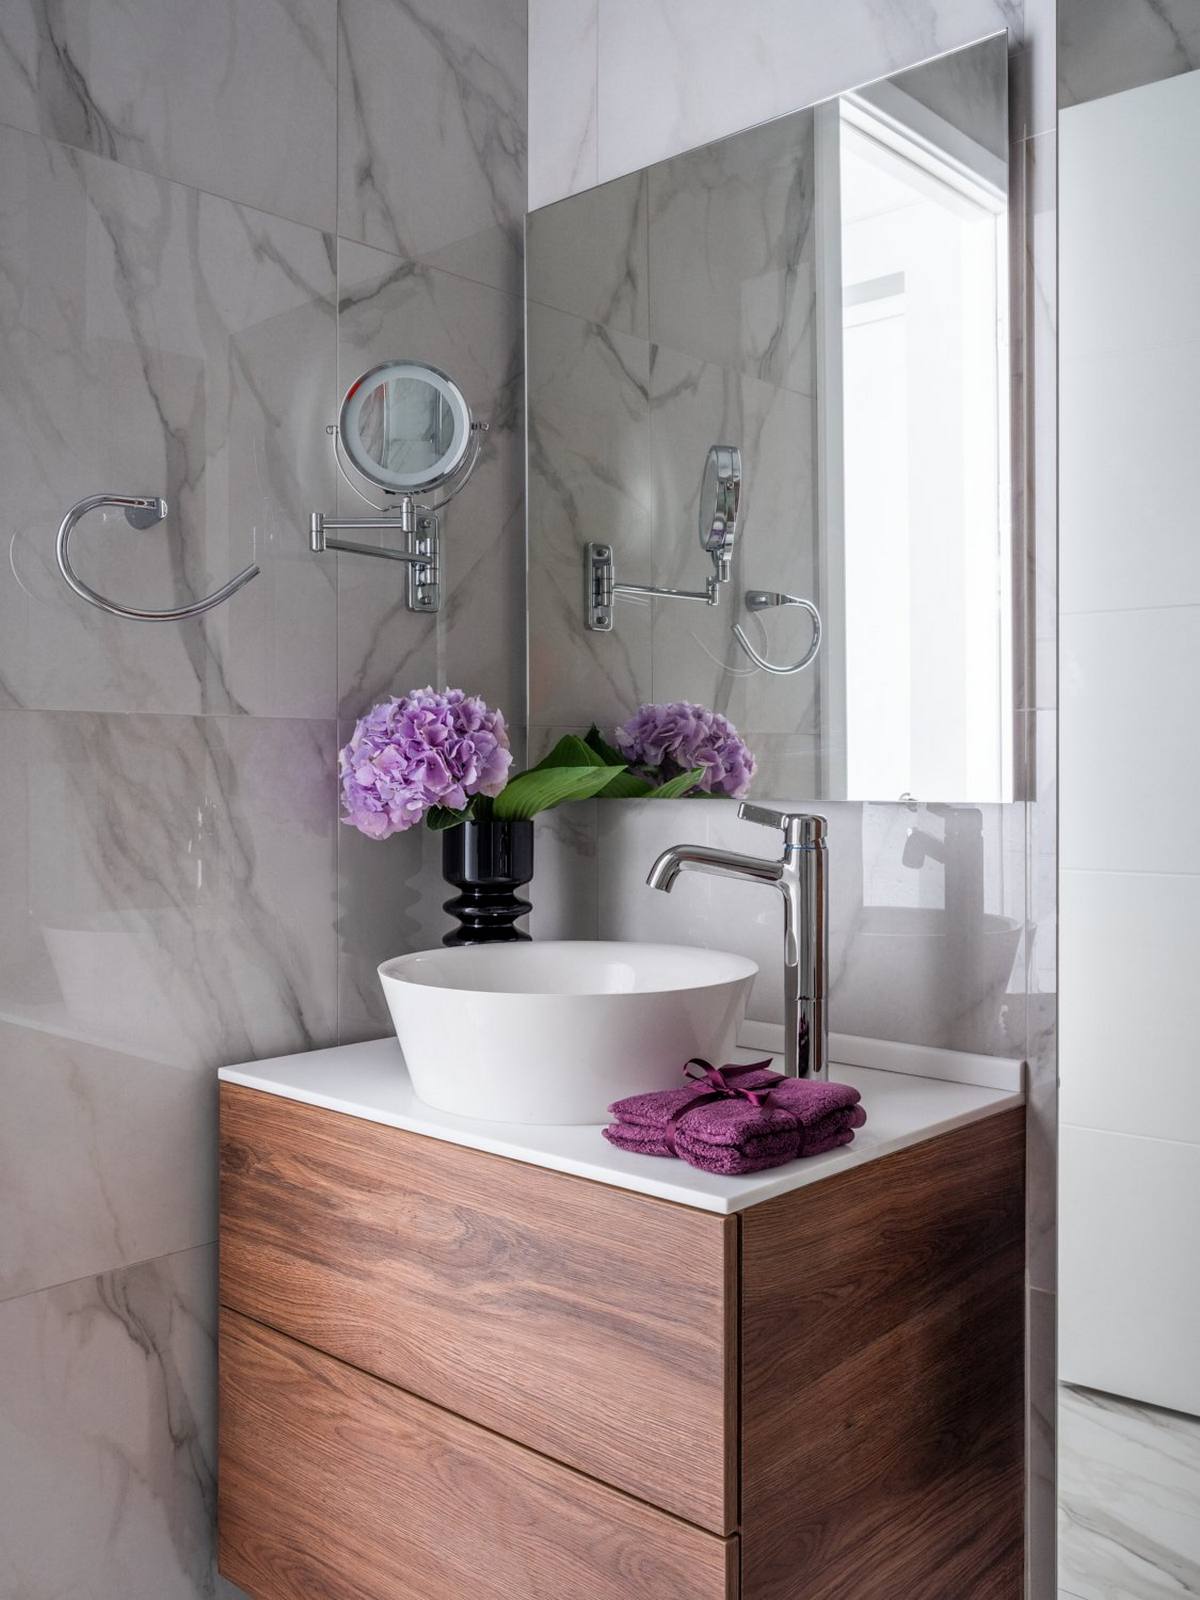 Nhà vệ sinh và buồng tắm được phân vùng bởi cửa kính trong suốt. Trên bồn rửa kết hợp tủ gỗ là chiếc lọ màu đen với cành hoa tím trang trí tương đồng với lối vào căn hộ.